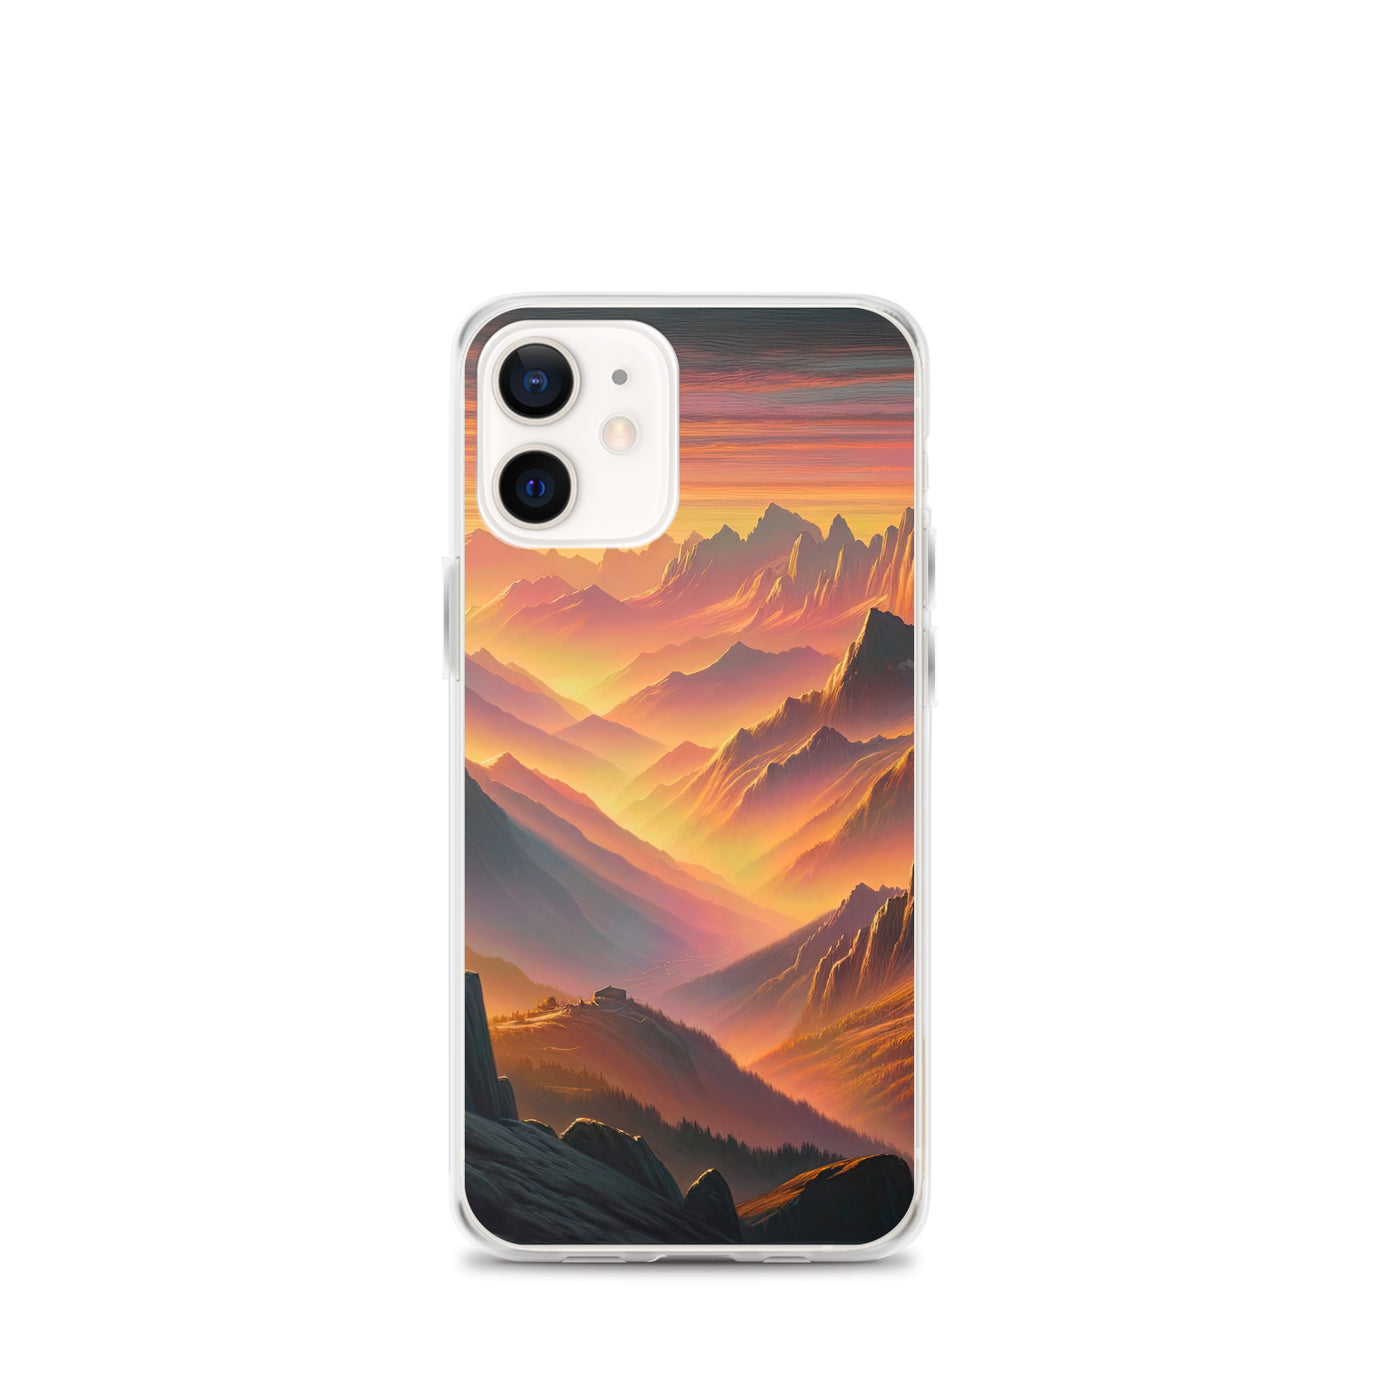 Ölgemälde der Alpen in der goldenen Stunde mit Wanderer, Orange-Rosa Bergpanorama - iPhone Schutzhülle (durchsichtig) wandern xxx yyy zzz iPhone 12 mini